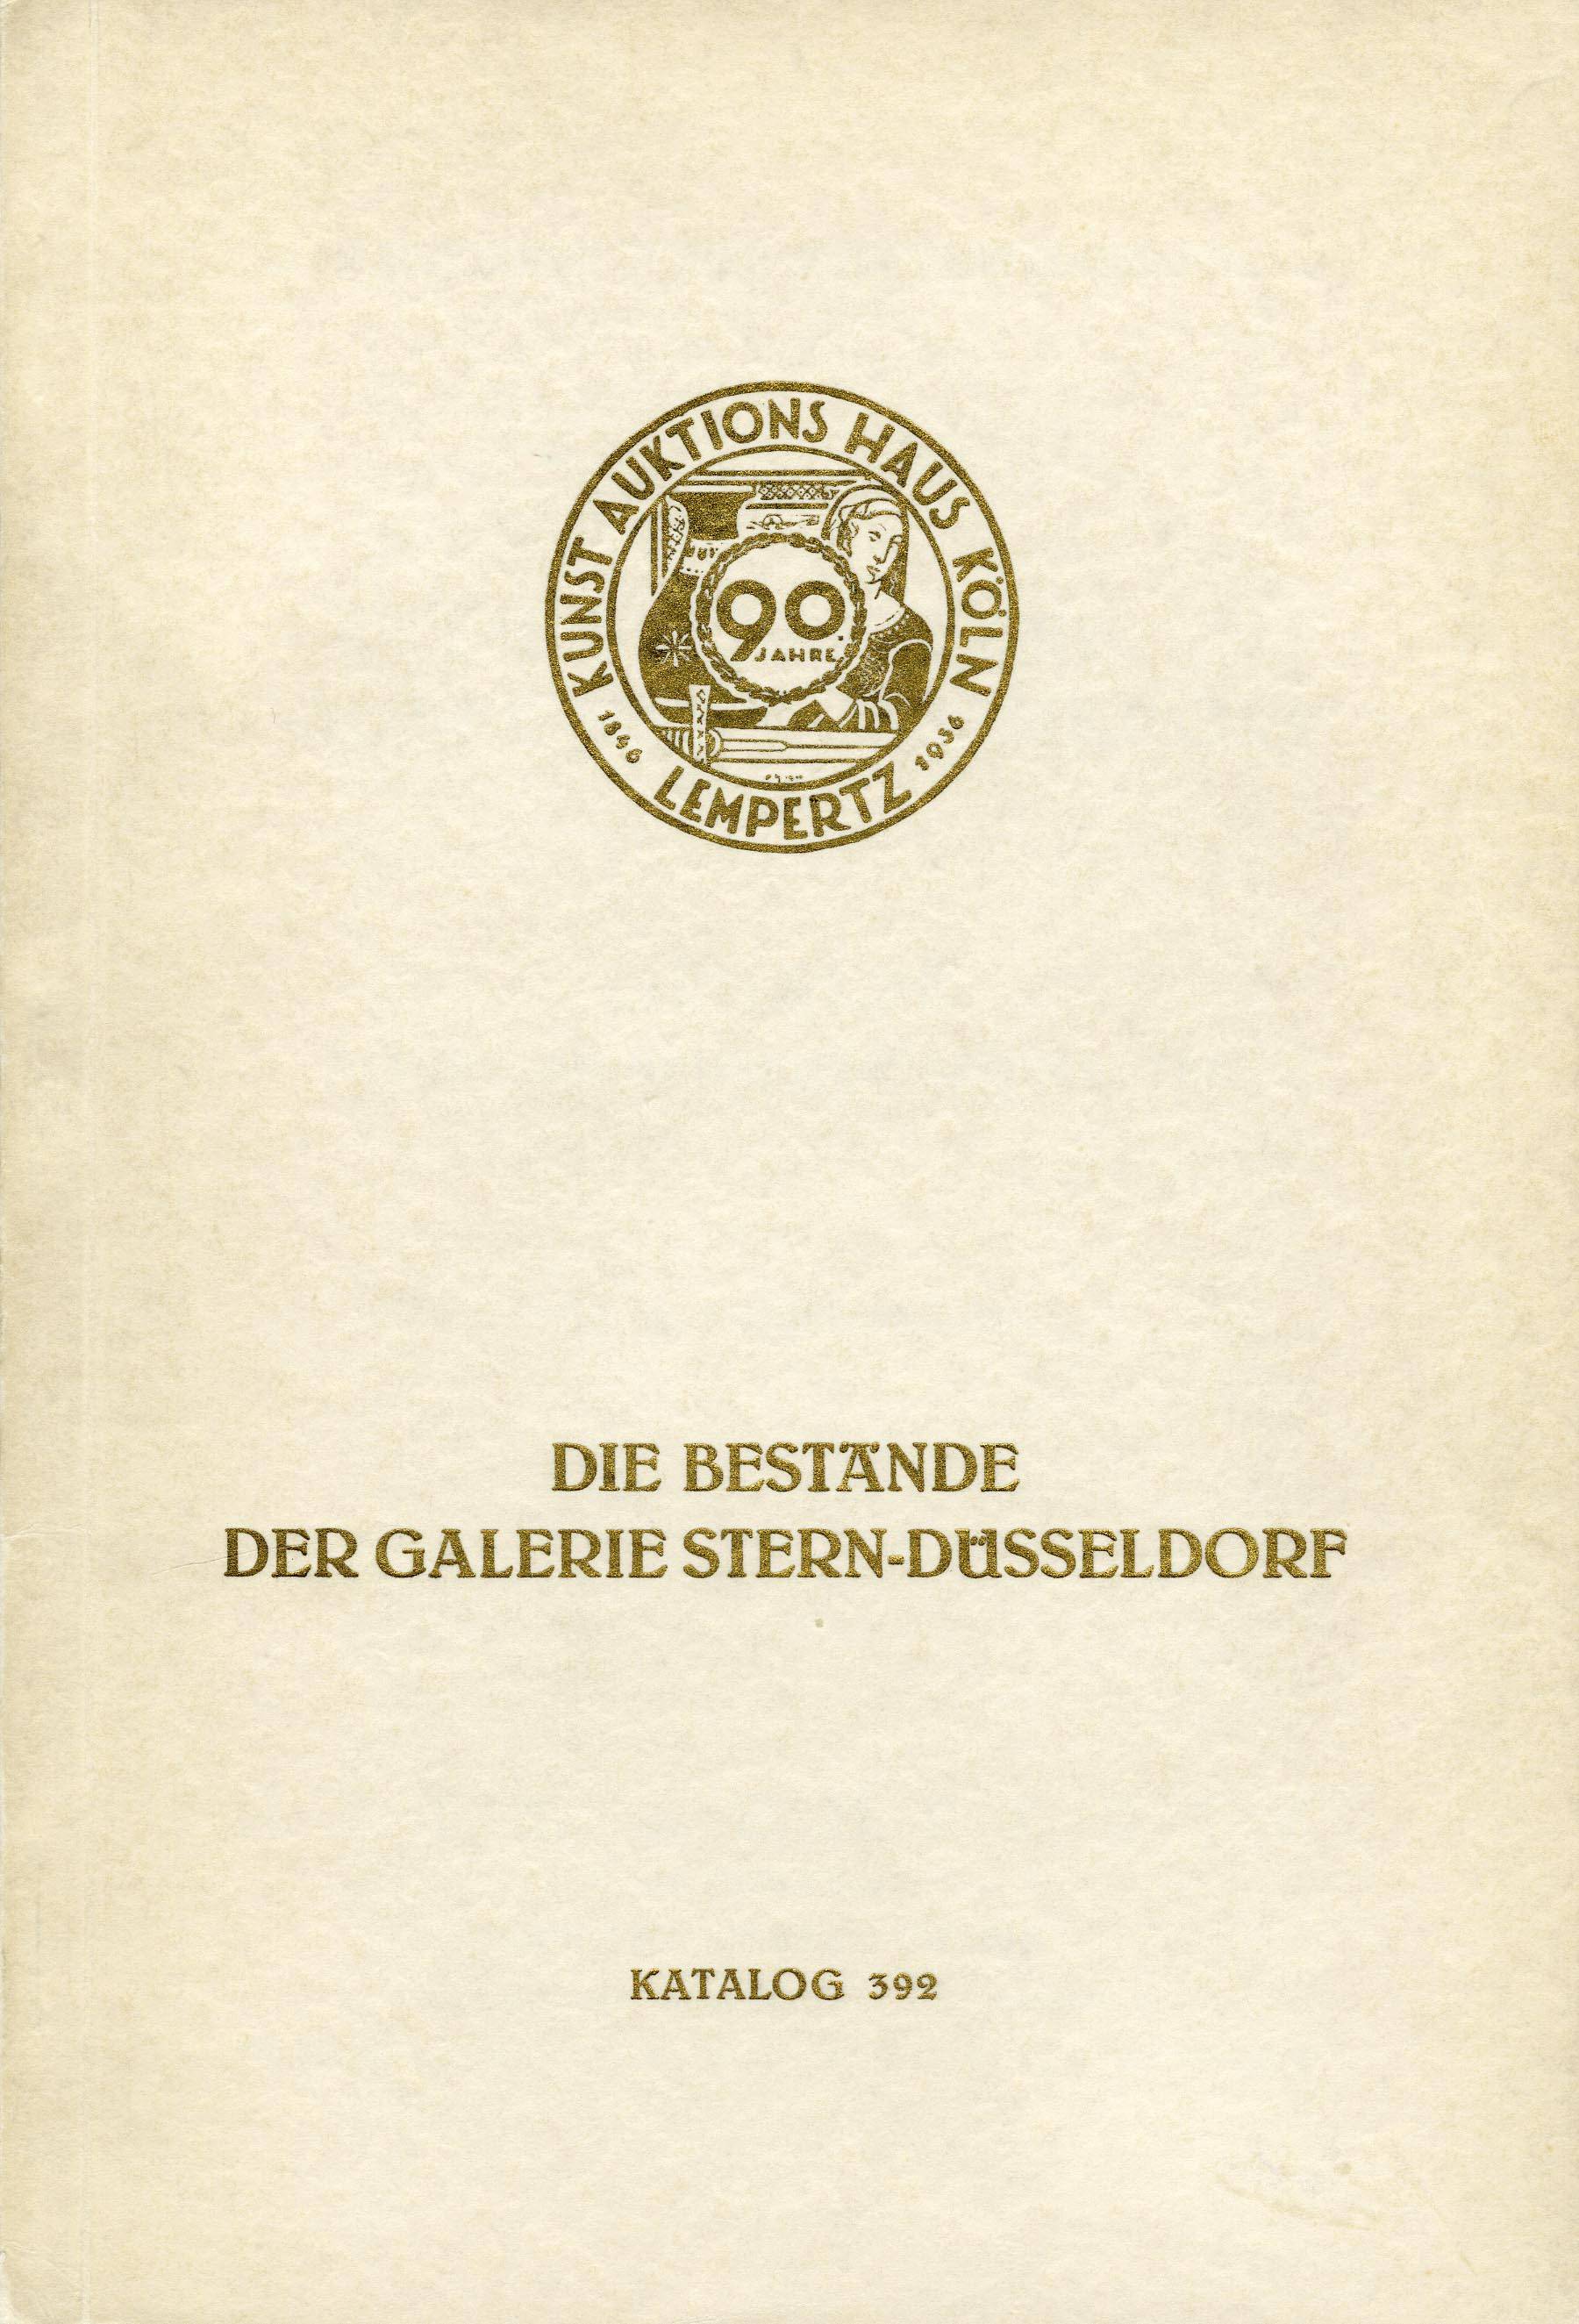 Text reads: Kunst Auktion Haus Koln Lempertz 1846-1936/ Die Bestande Ser Galerie Stern-Dusseldorf Katalog 392